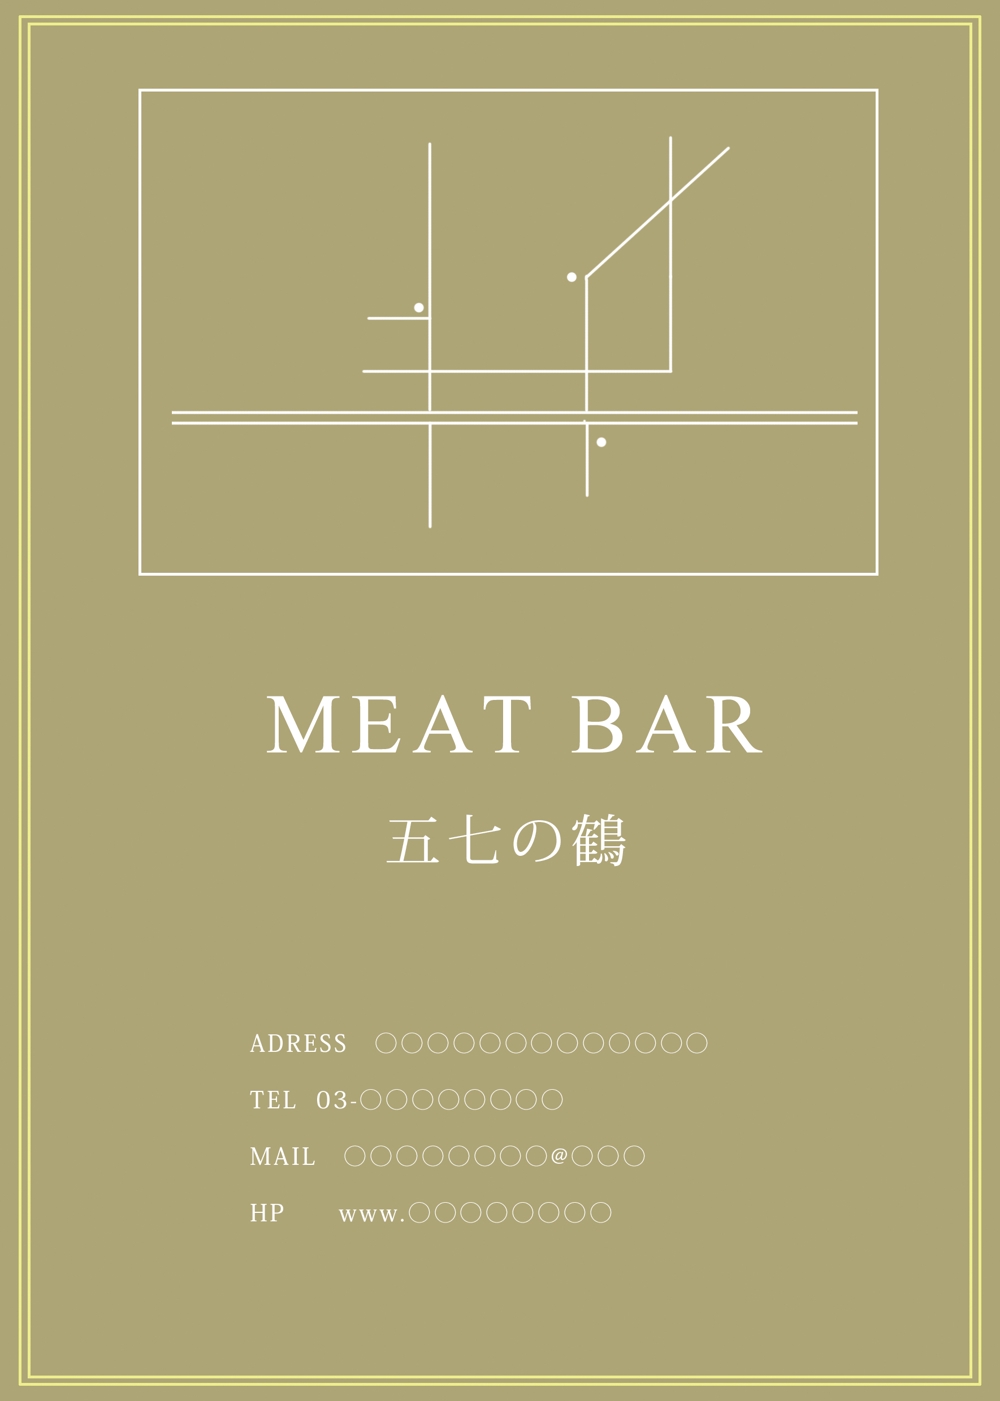 肉バルのメニューとショップカードの作成